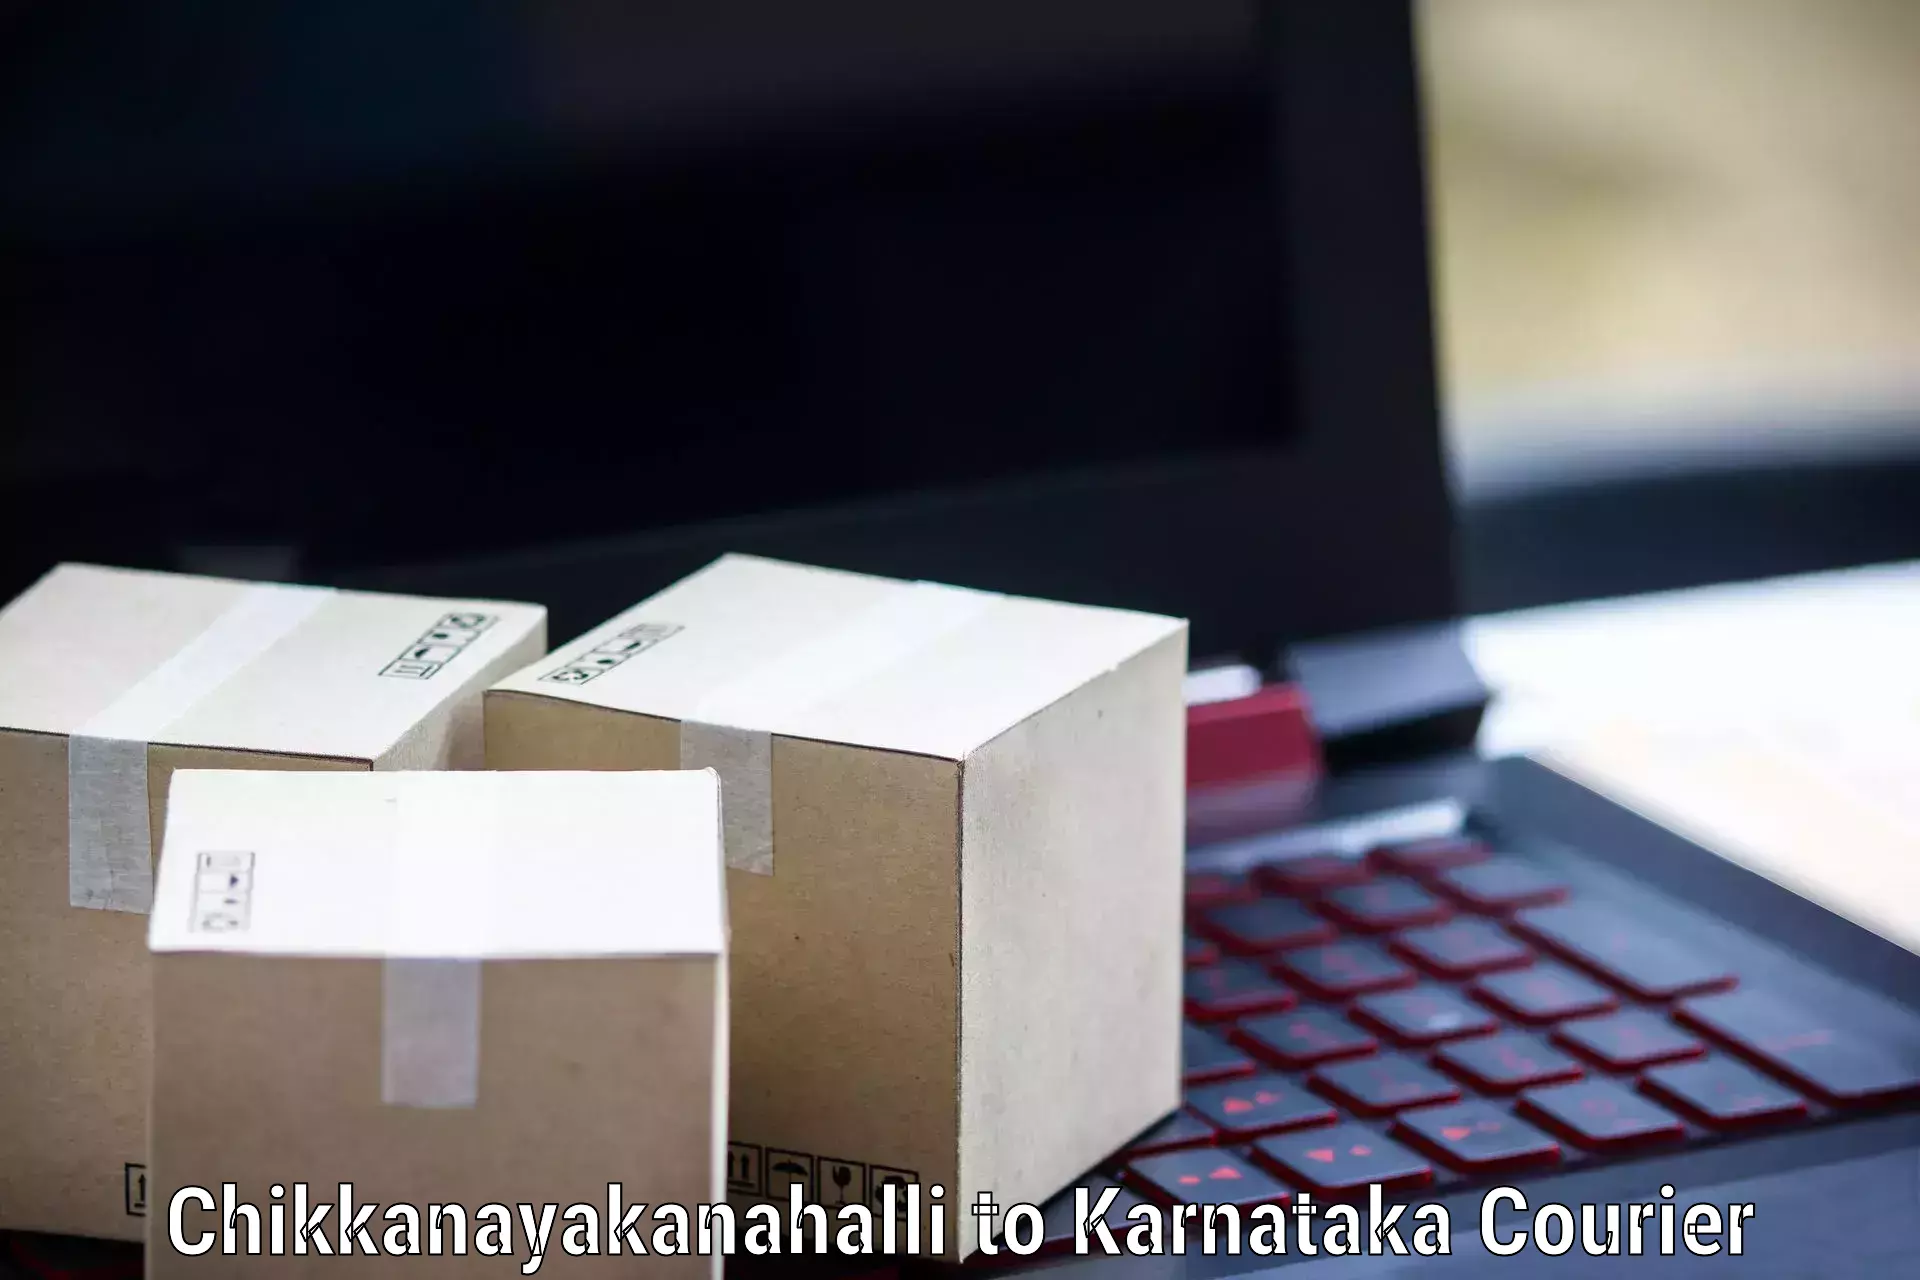 Fast-track shipping solutions Chikkanayakanahalli to Bangarapet